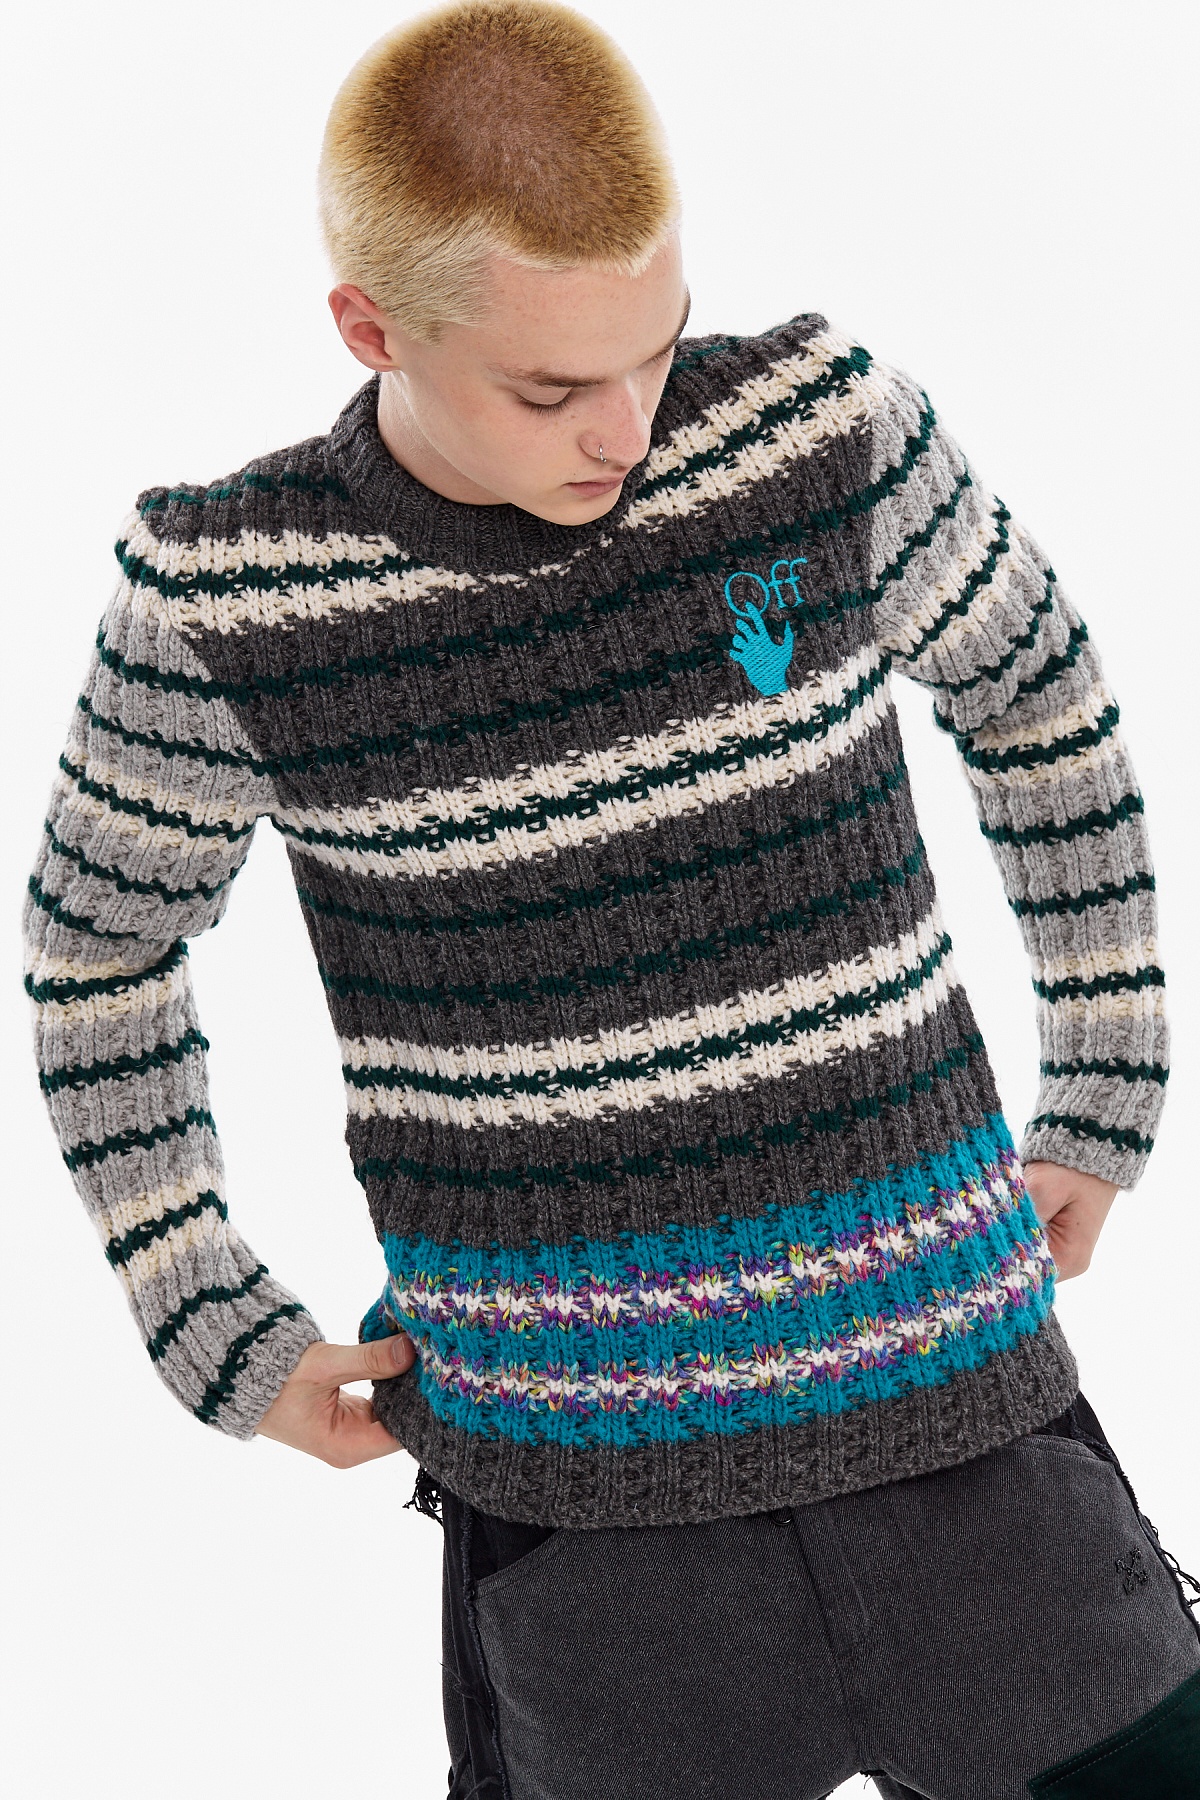 Утепляемся: 15 стильных свитеров на осень 